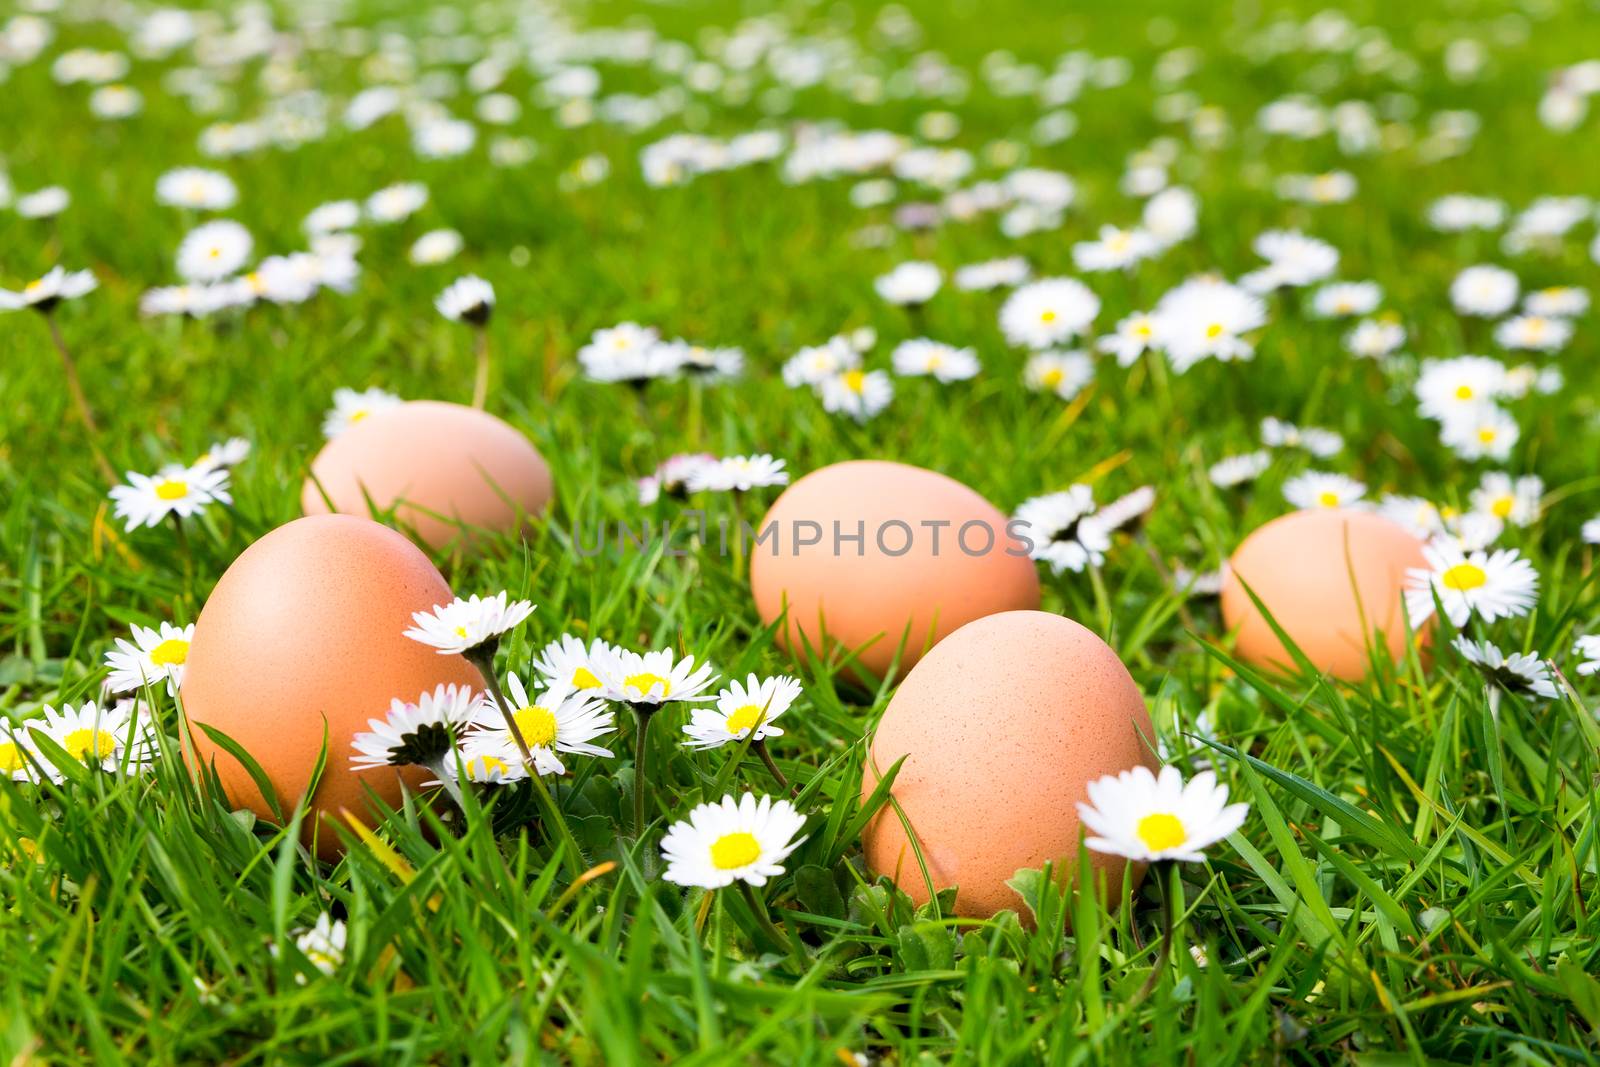 Chicken eggs in grass with daisies by BenSchonewille